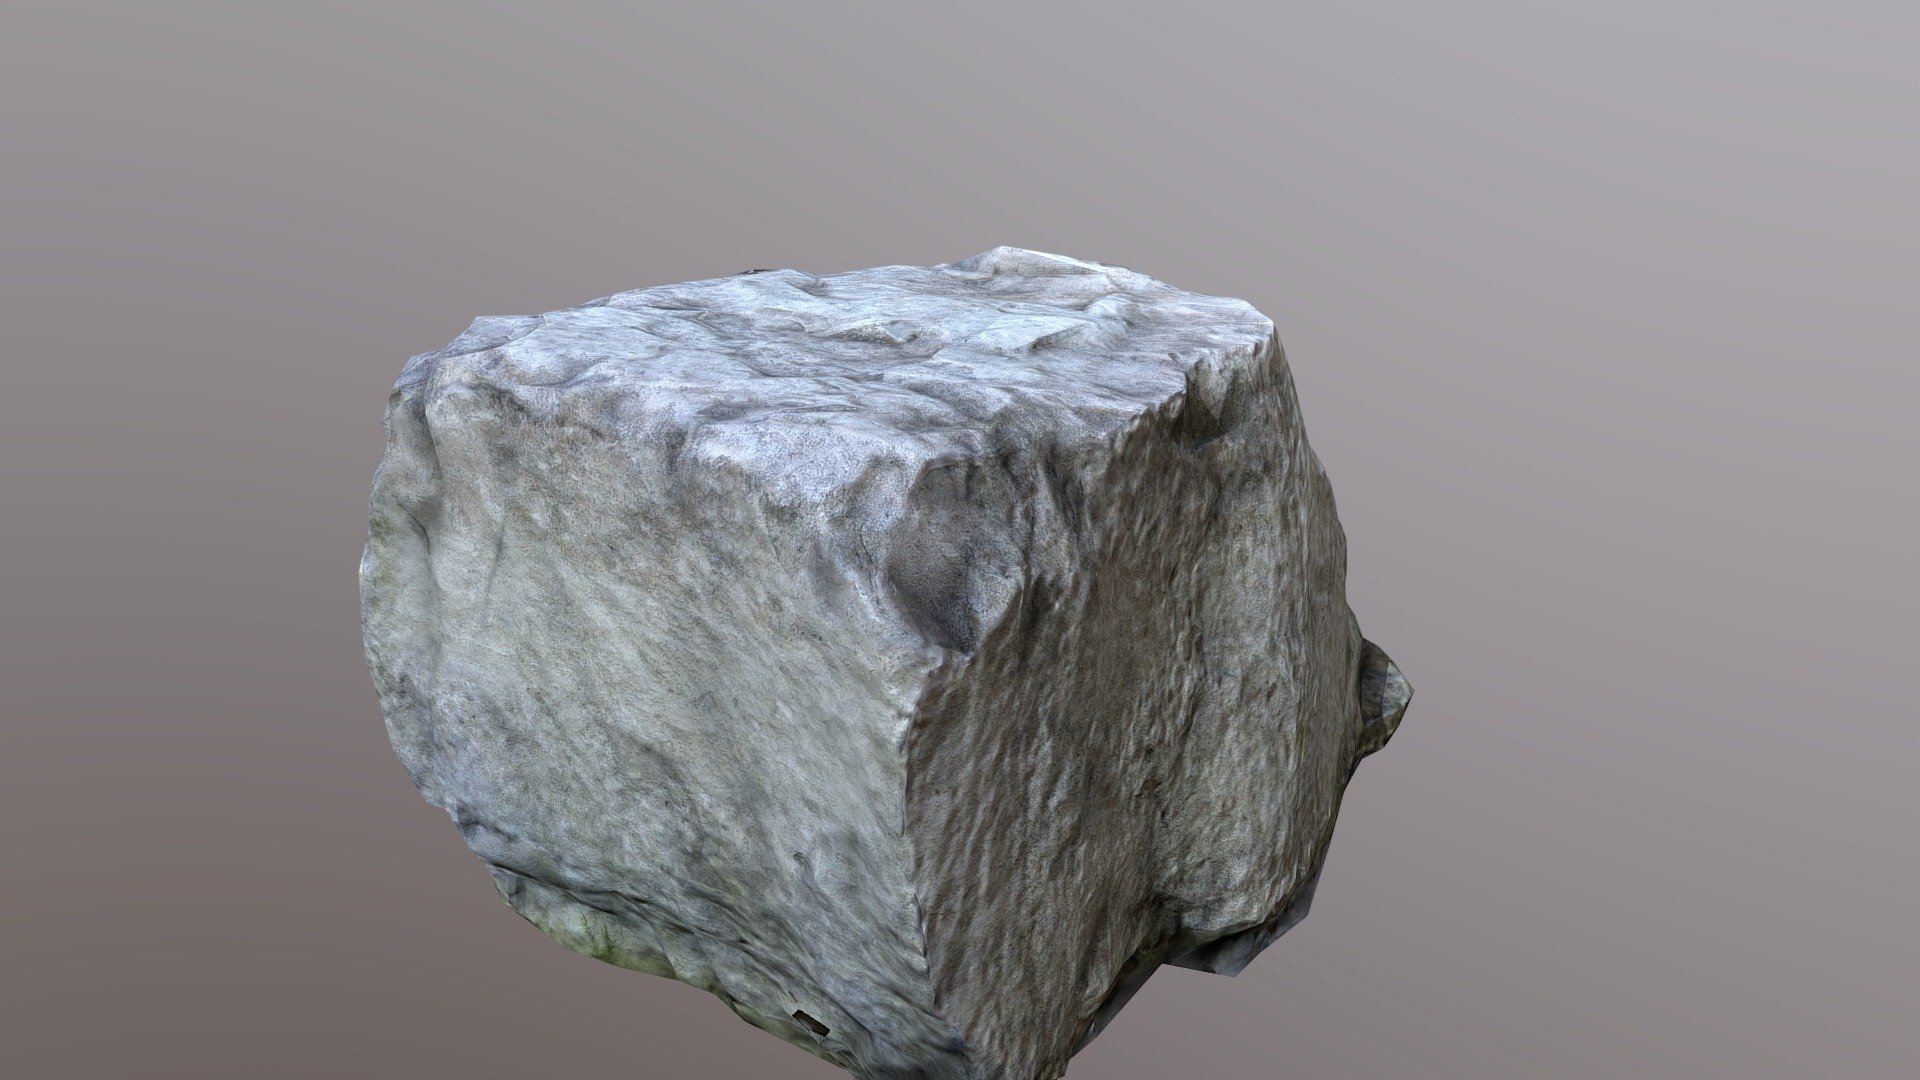 3D Rock photogrammetry